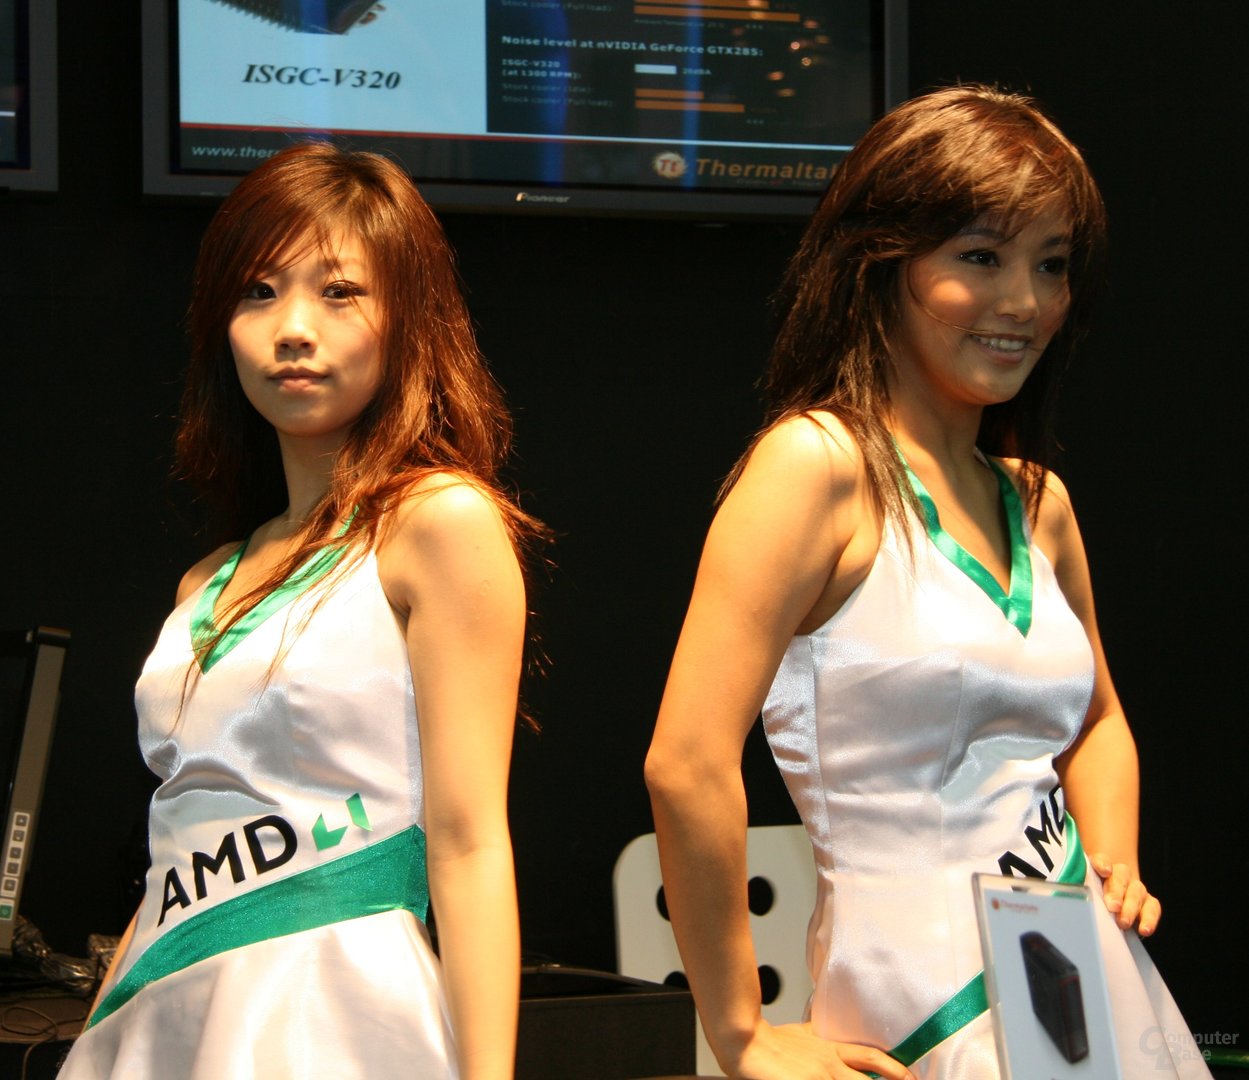 AMDs Showgirls